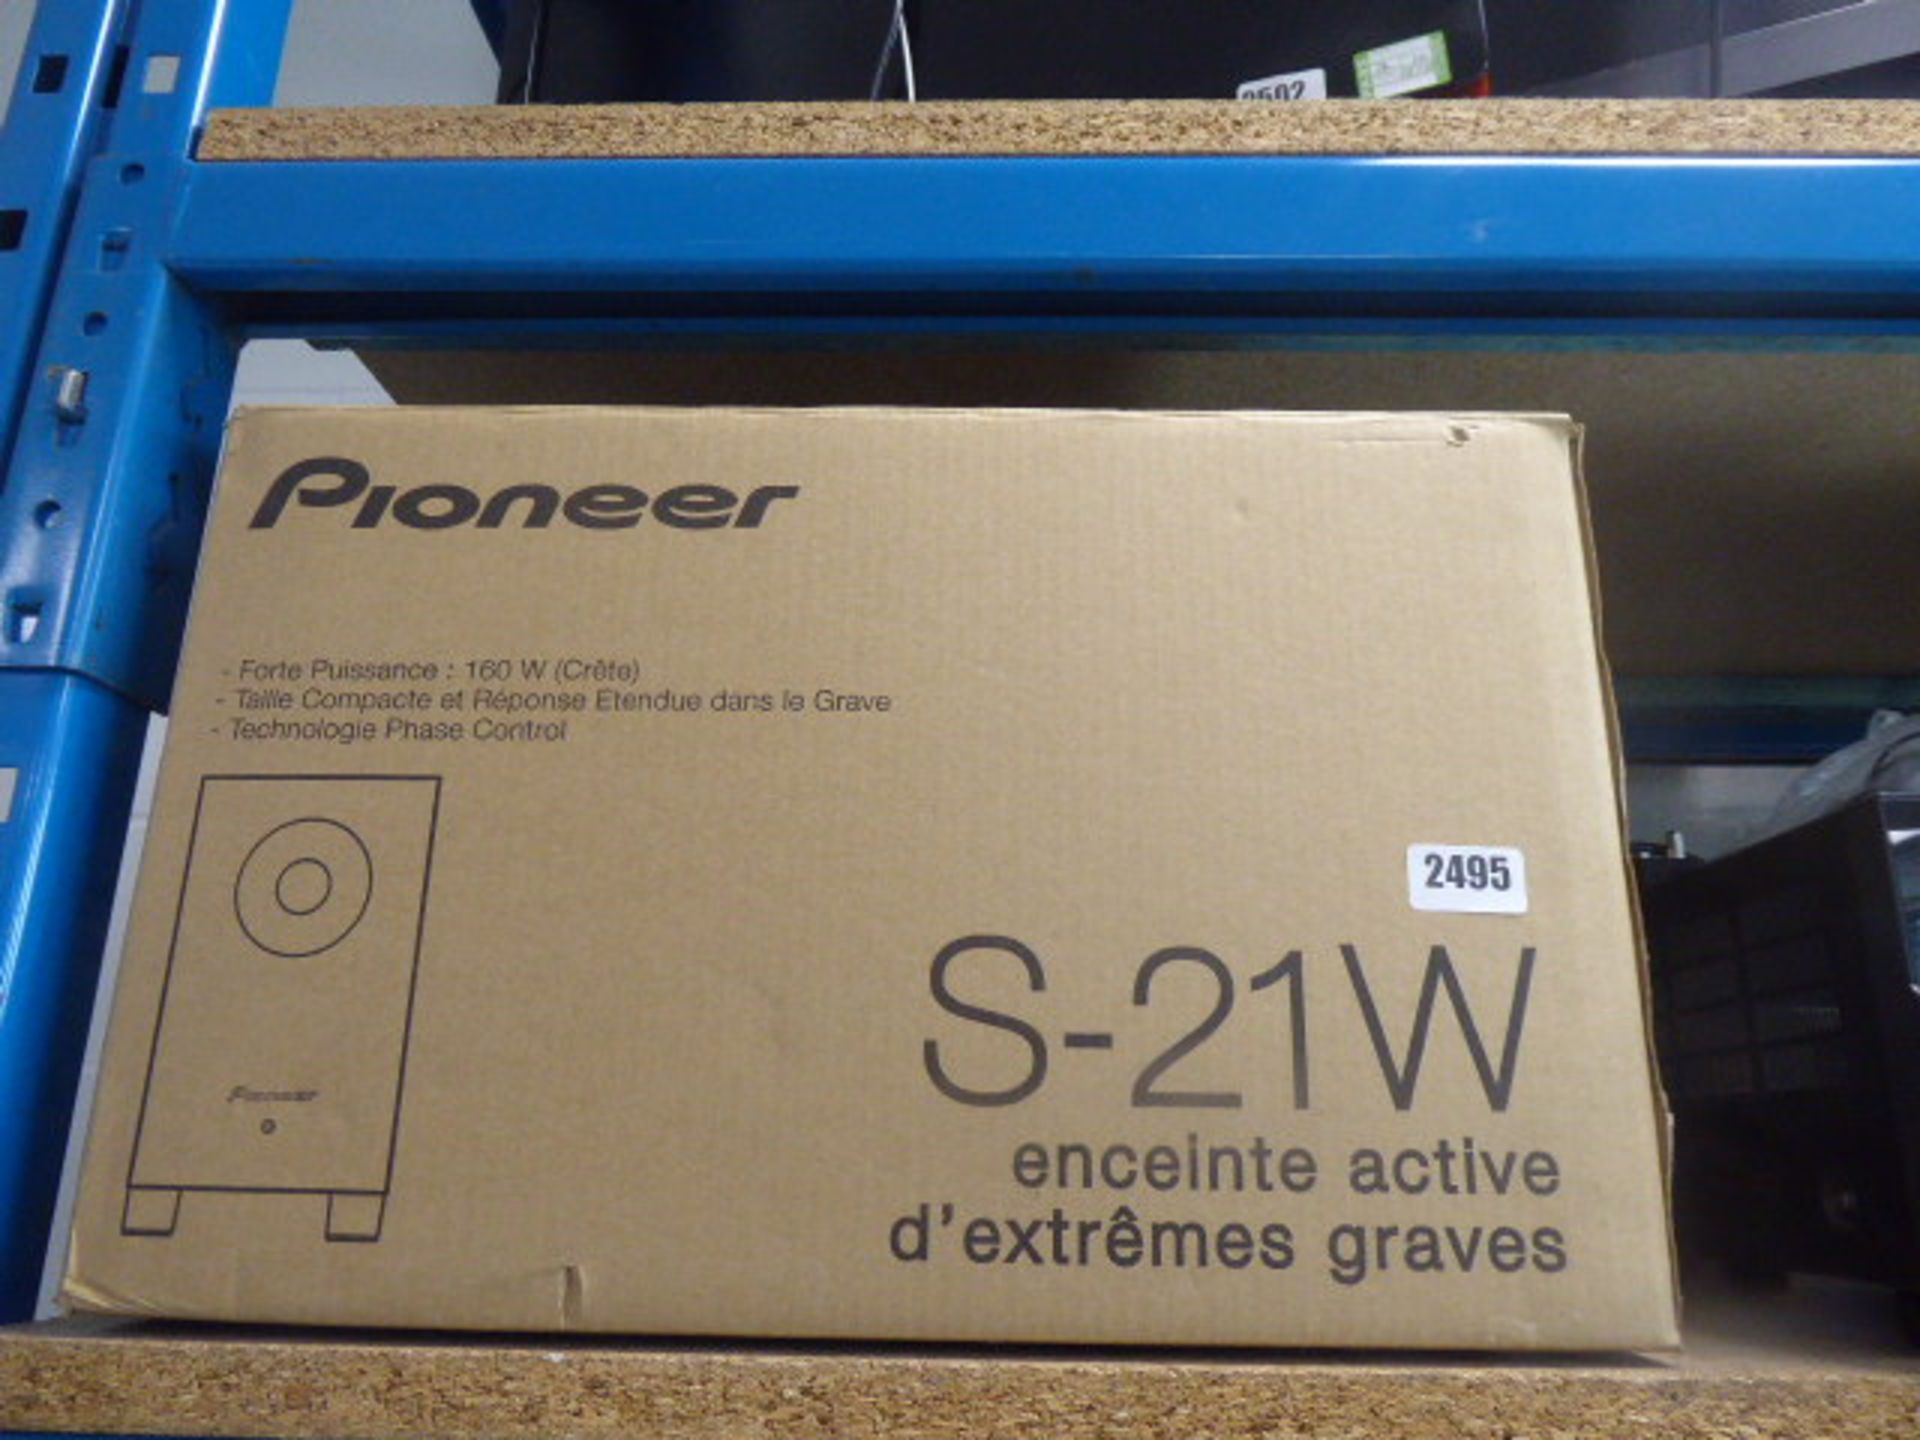 Pioneer S-21W Surround sound sub-woofer set